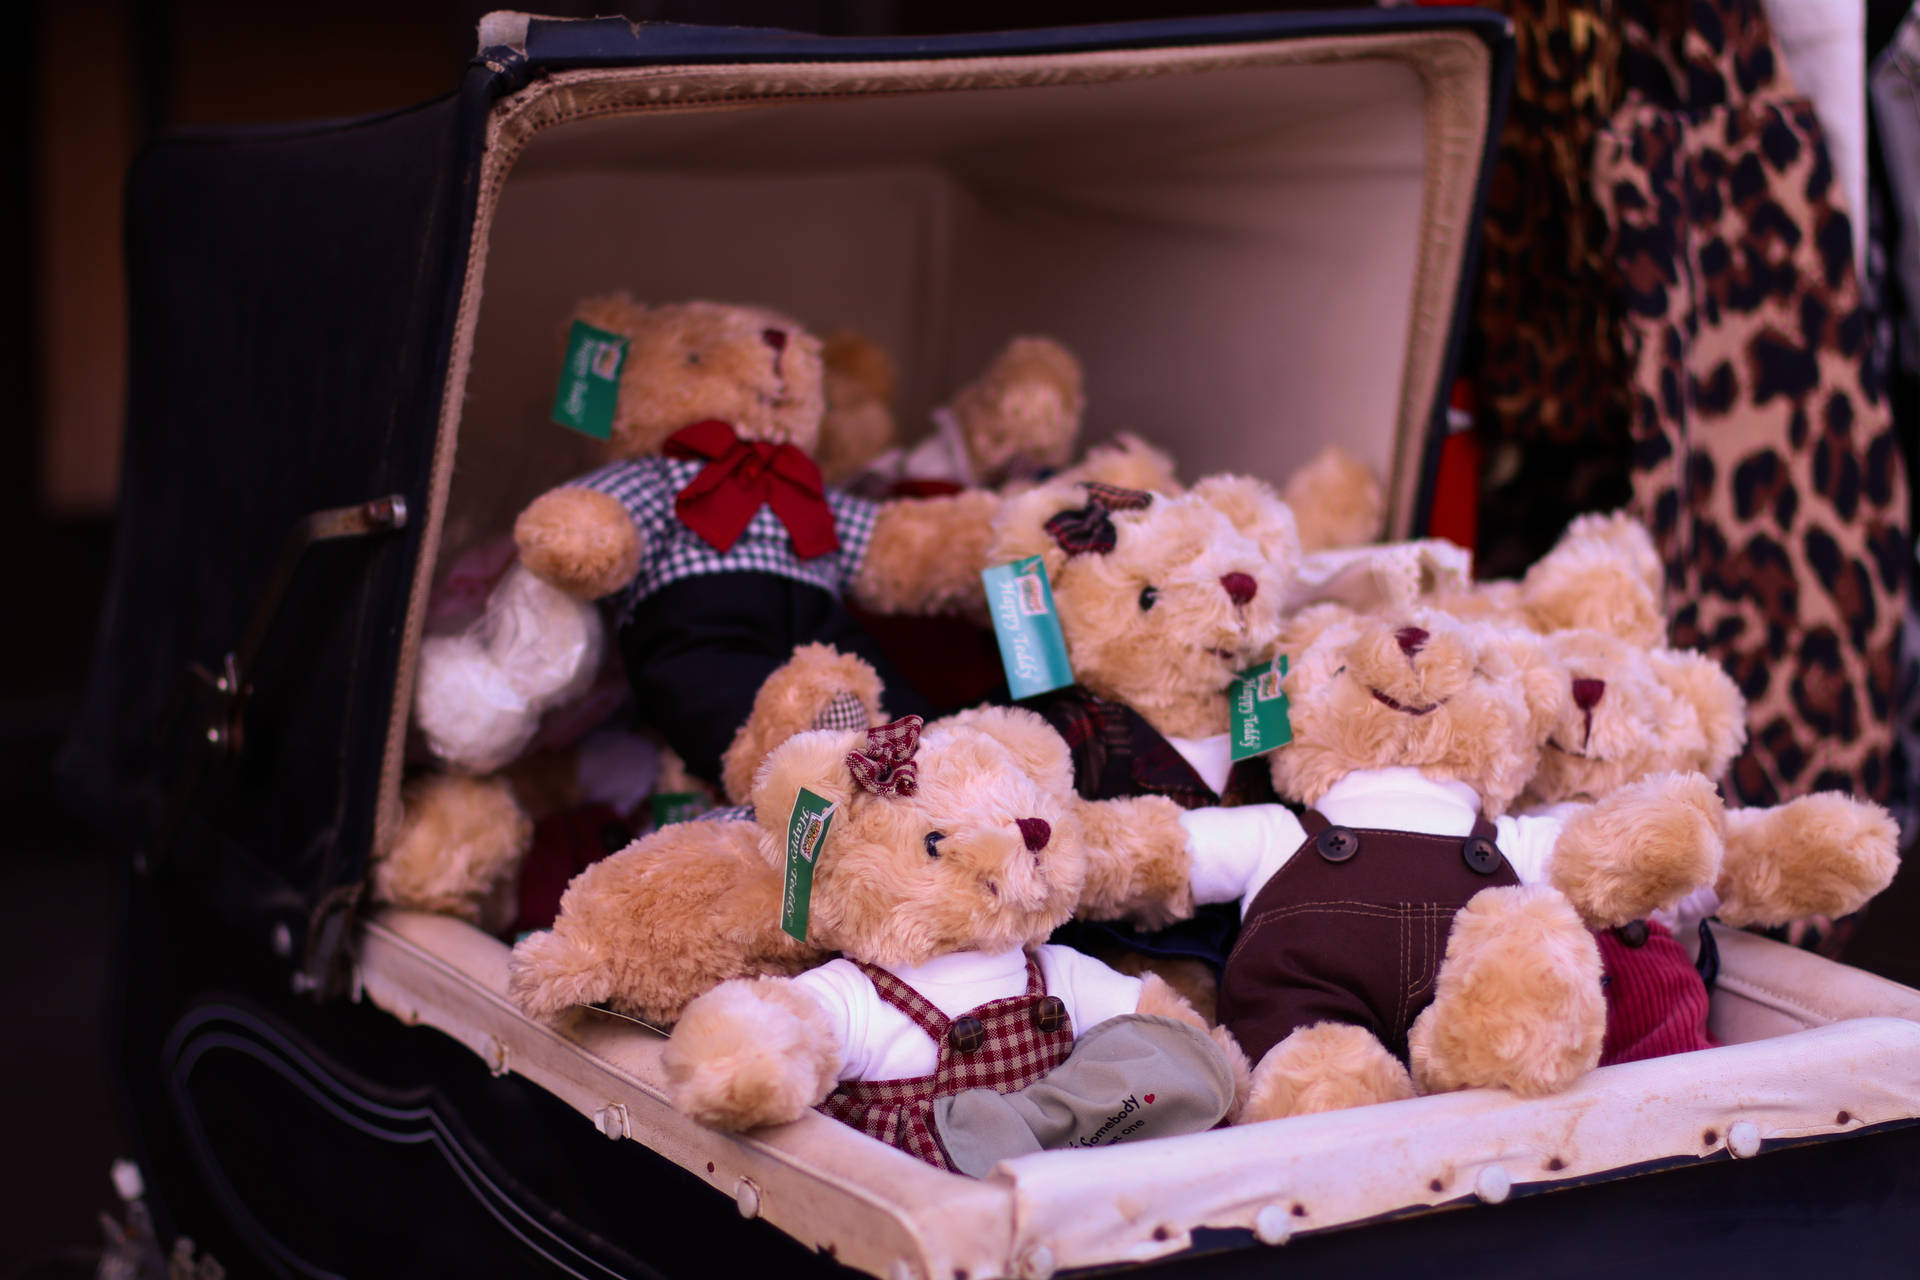 Cute Teddy Bear In A Box